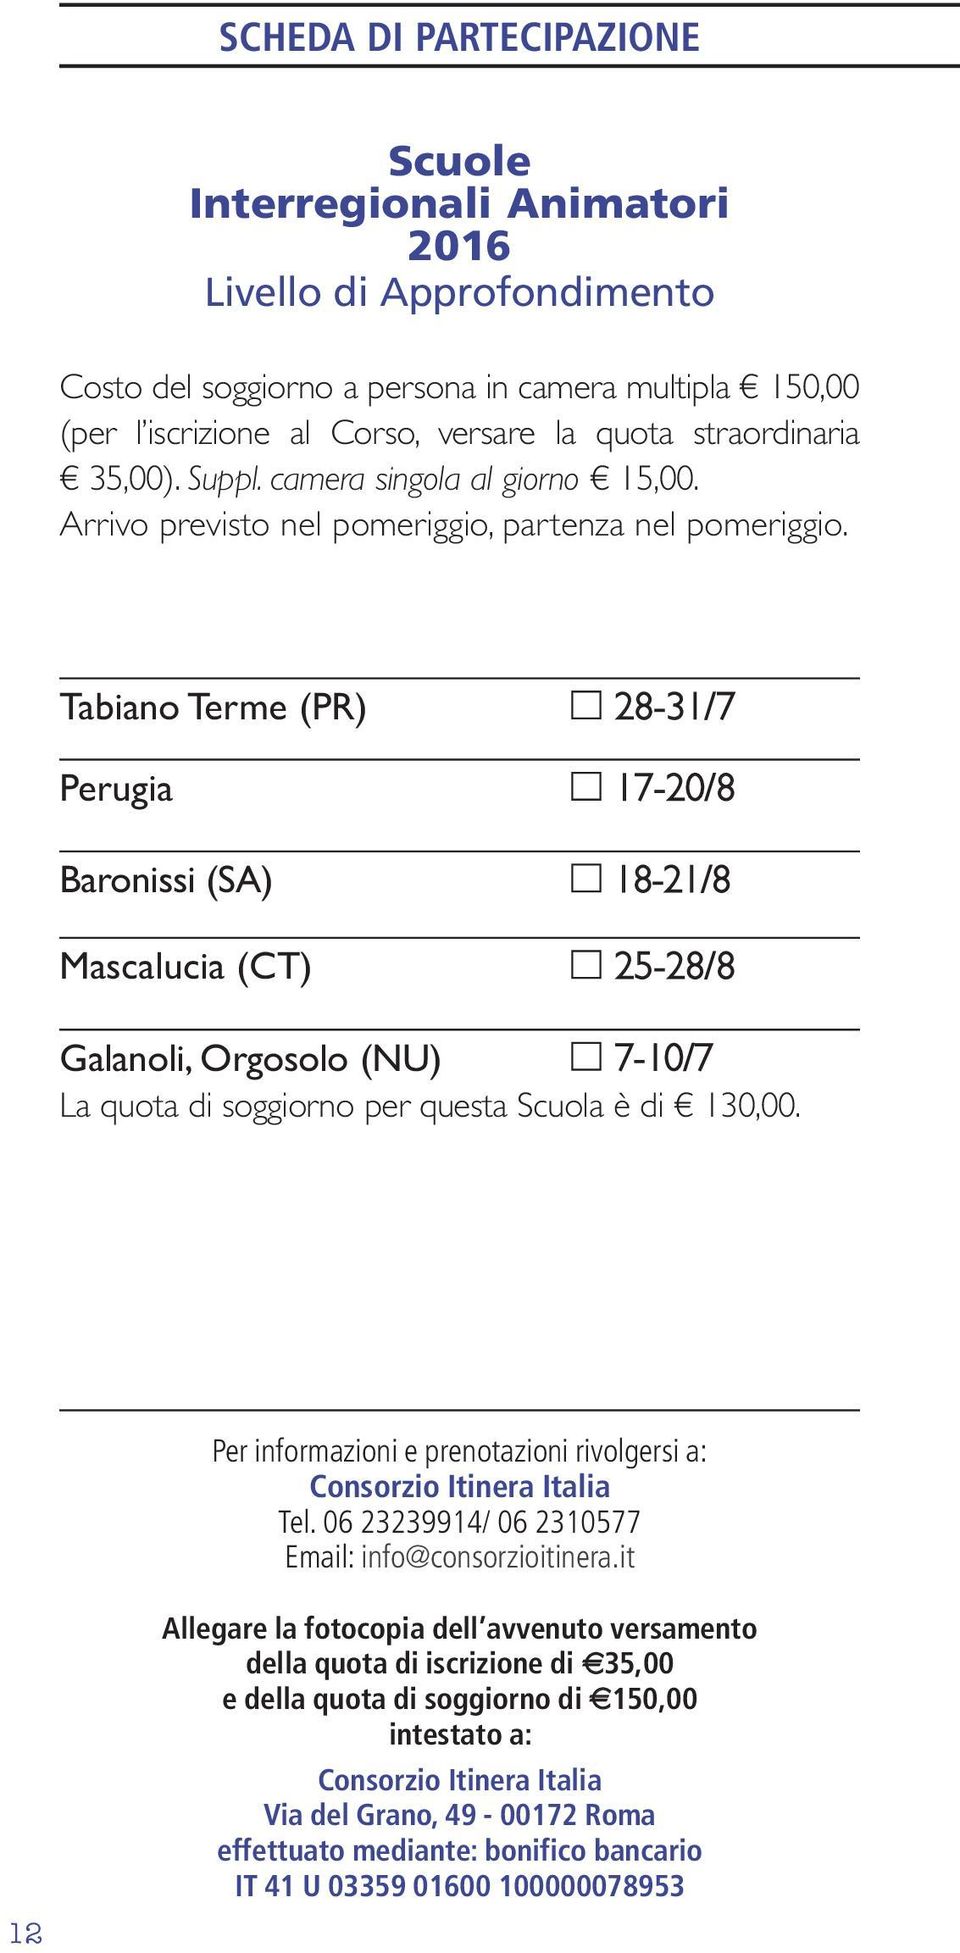 Tabiano Terme (PR) 28-31/7 Perugia 17-20/8 Baronissi (SA) 18-21/8 Mascalucia (CT) 25-28/8 Galanoli, Orgosolo (NU) 7-10/7 La quota di soggiorno per questa Scuola è di 130,00.